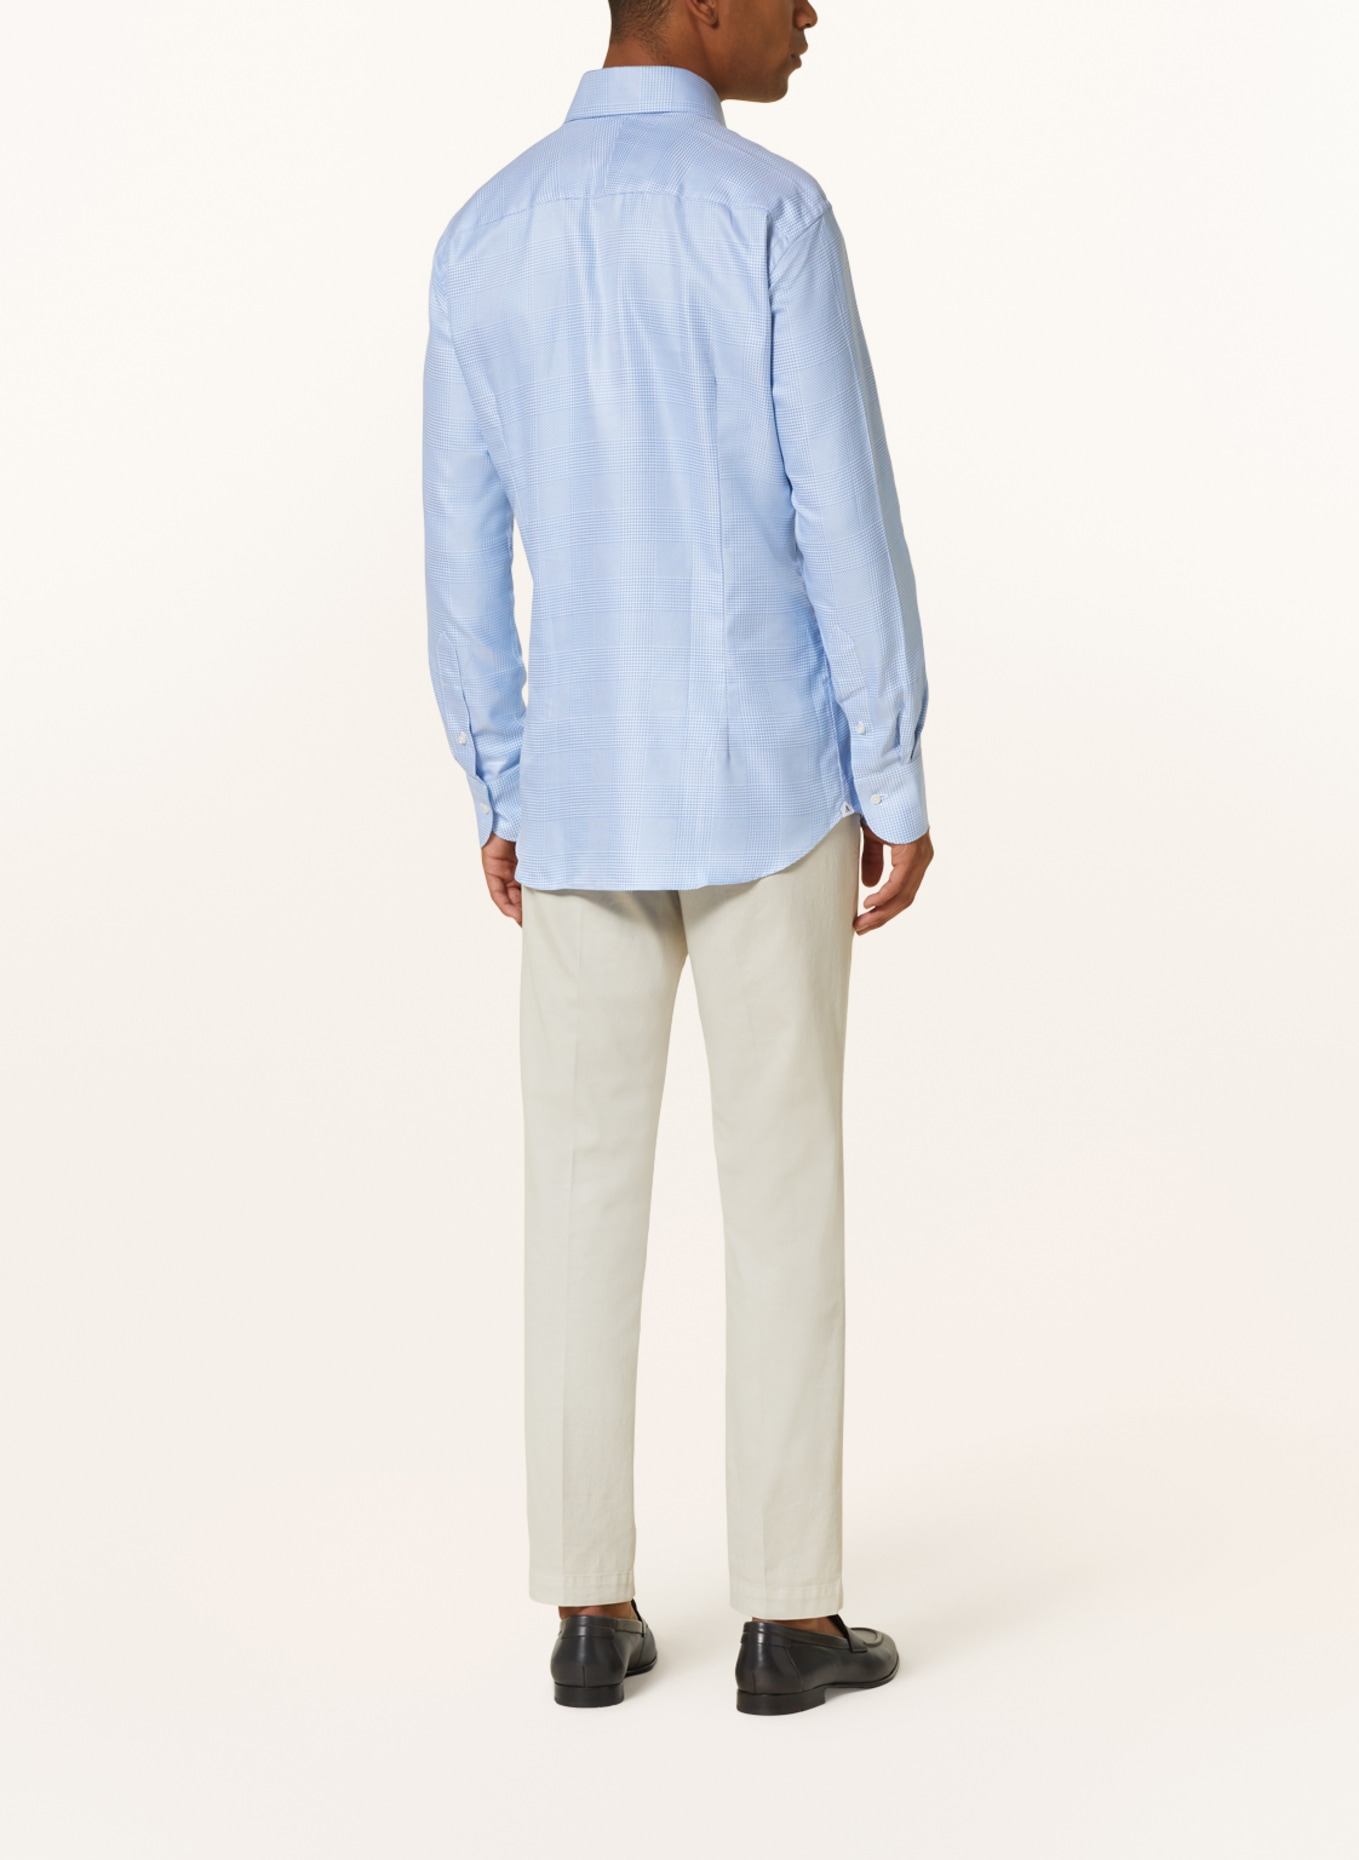 ARTIGIANO Shirt slim fit, Color: LIGHT BLUE/ WHITE (Image 3)